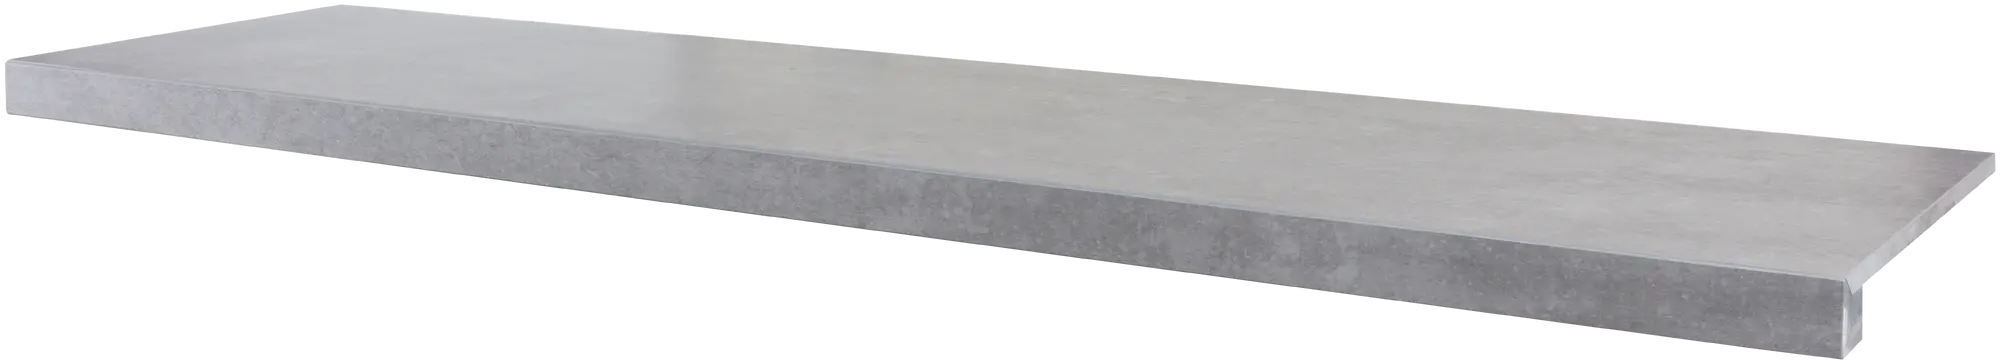 Peldaño de escalera porcelánico artens martins gris 30x120 cm